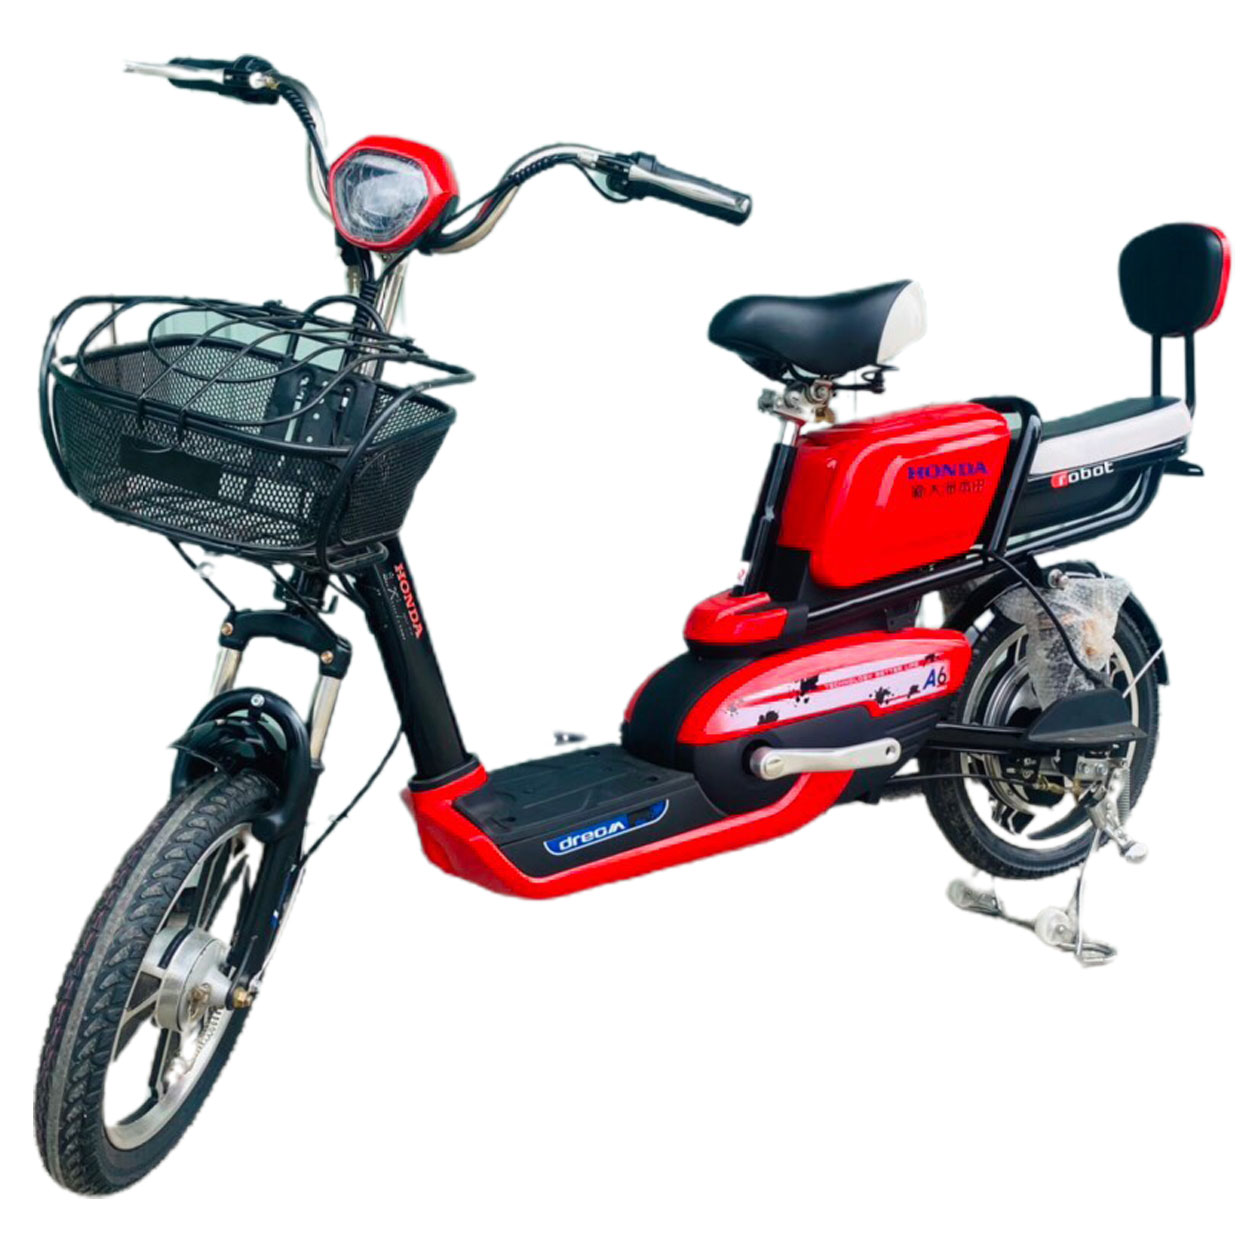 Xe đạp điện Honda A6 nhập khẩu chính hãng 2017